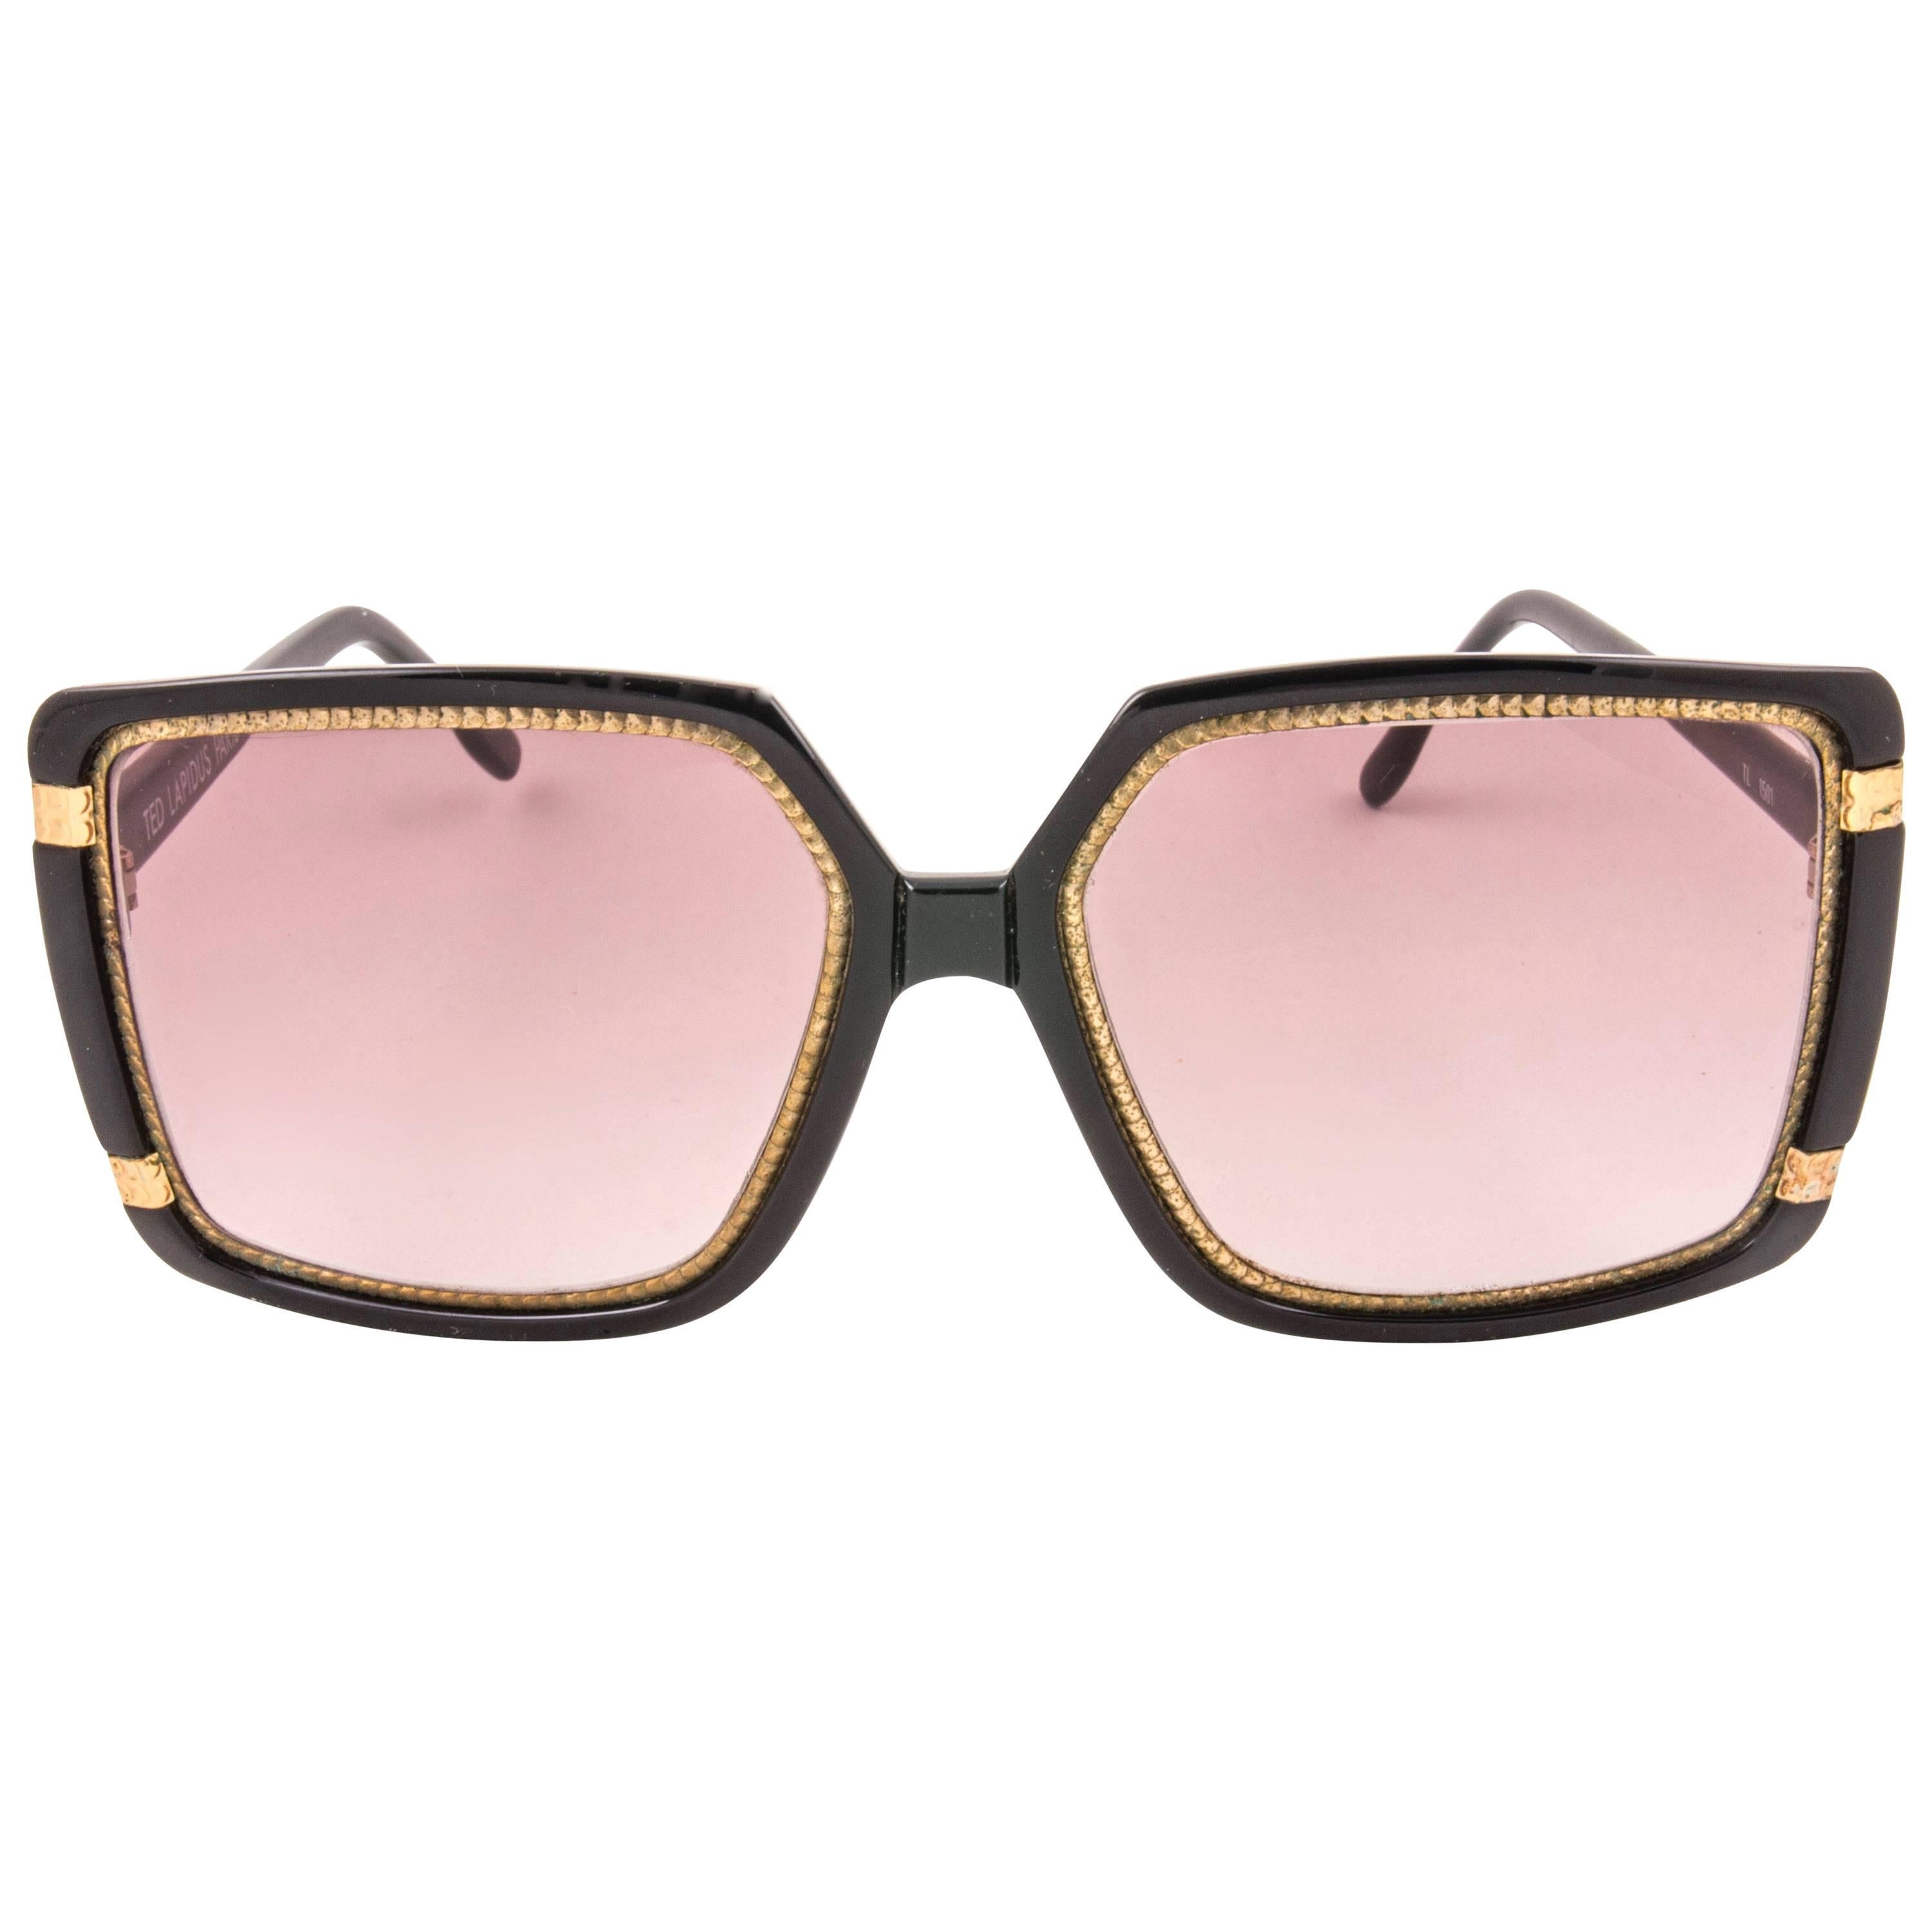 New Vintage Ted Lapidus Paris TL 15 01 Gold & Black 1970 Sunglasses